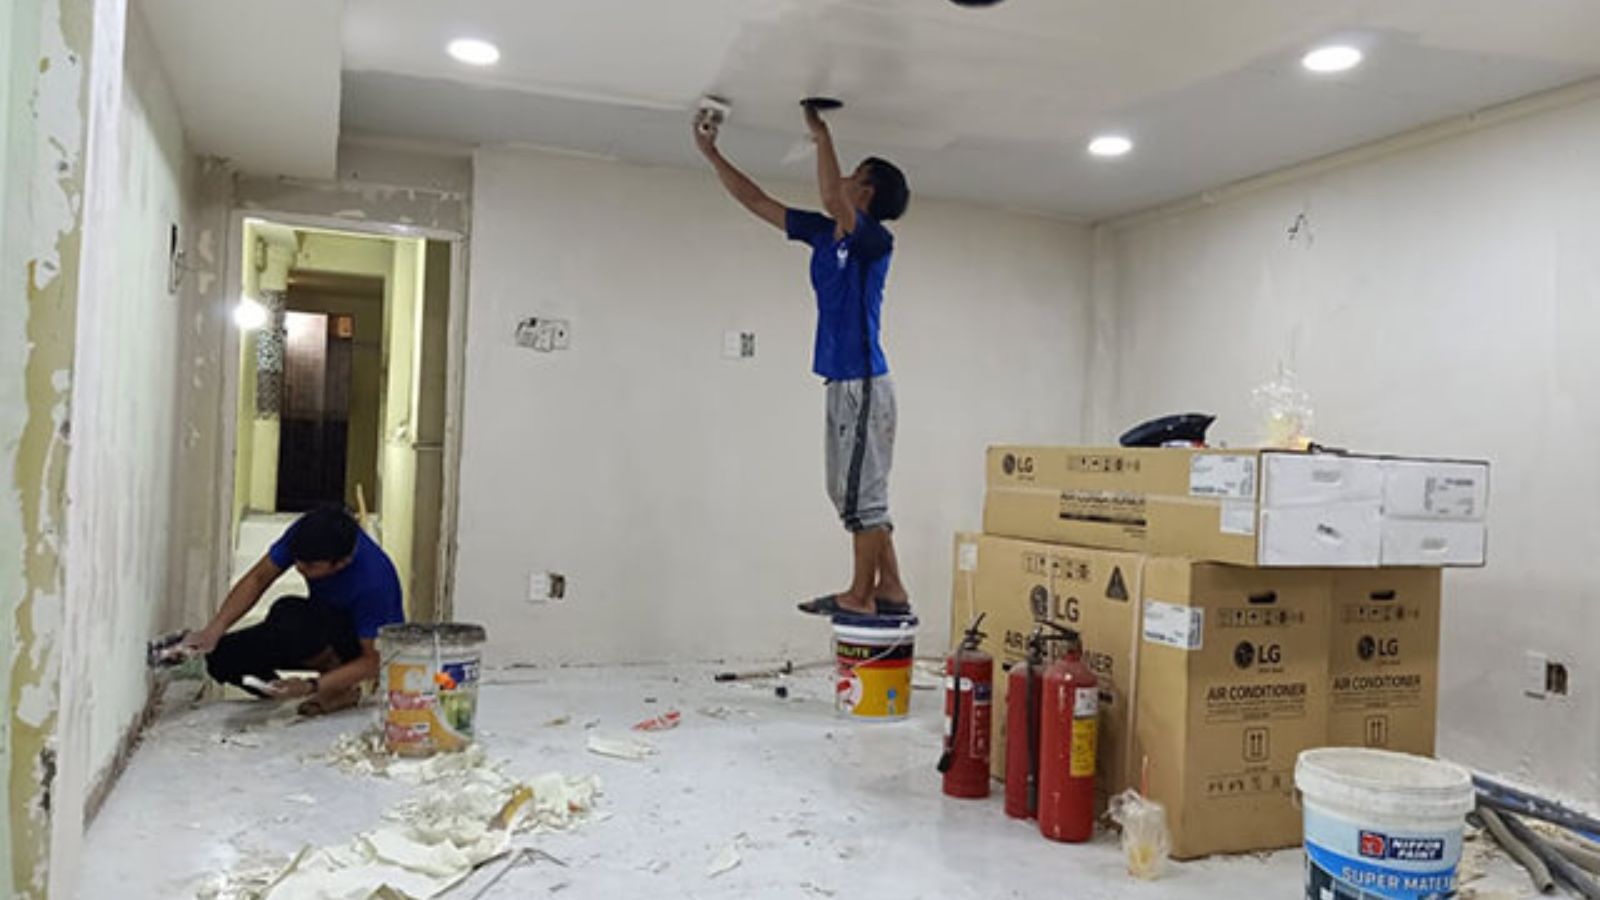 Báo giá dịch vụ sửa chữa nhà Đà Nẵng trọn gói: Tận hưởng không gian sống hoàn hảo